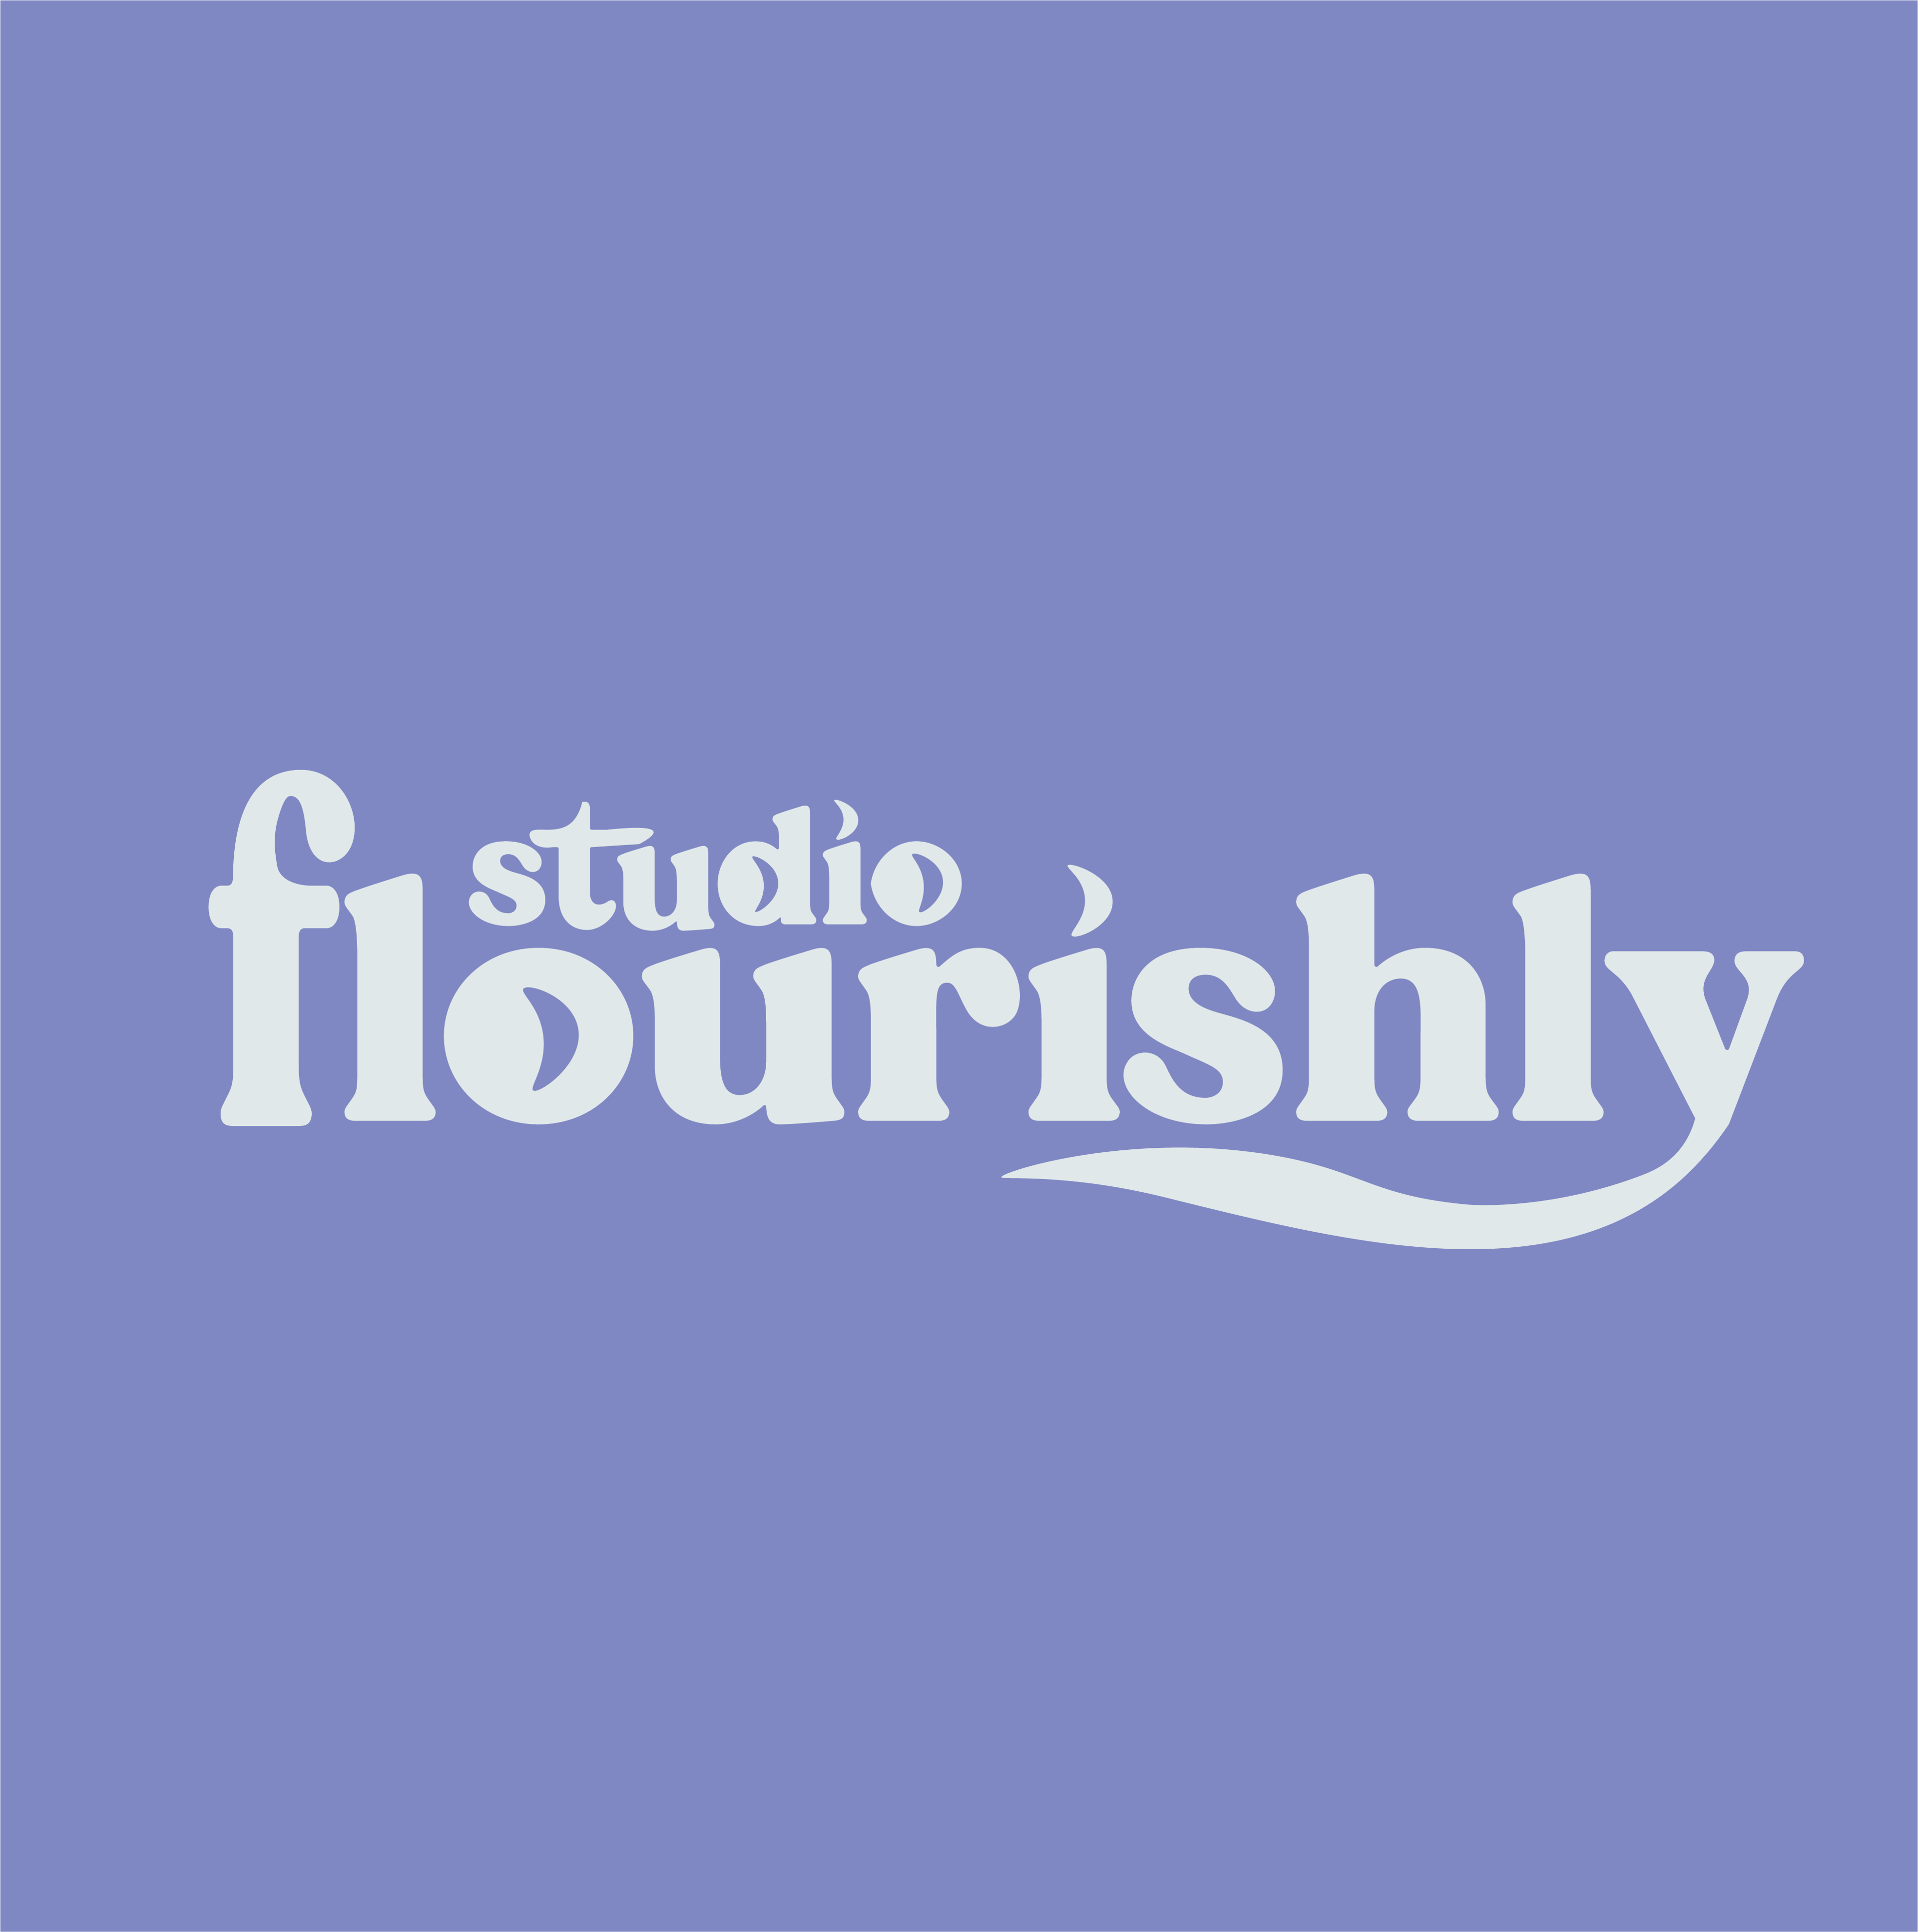 Studio Flourishly